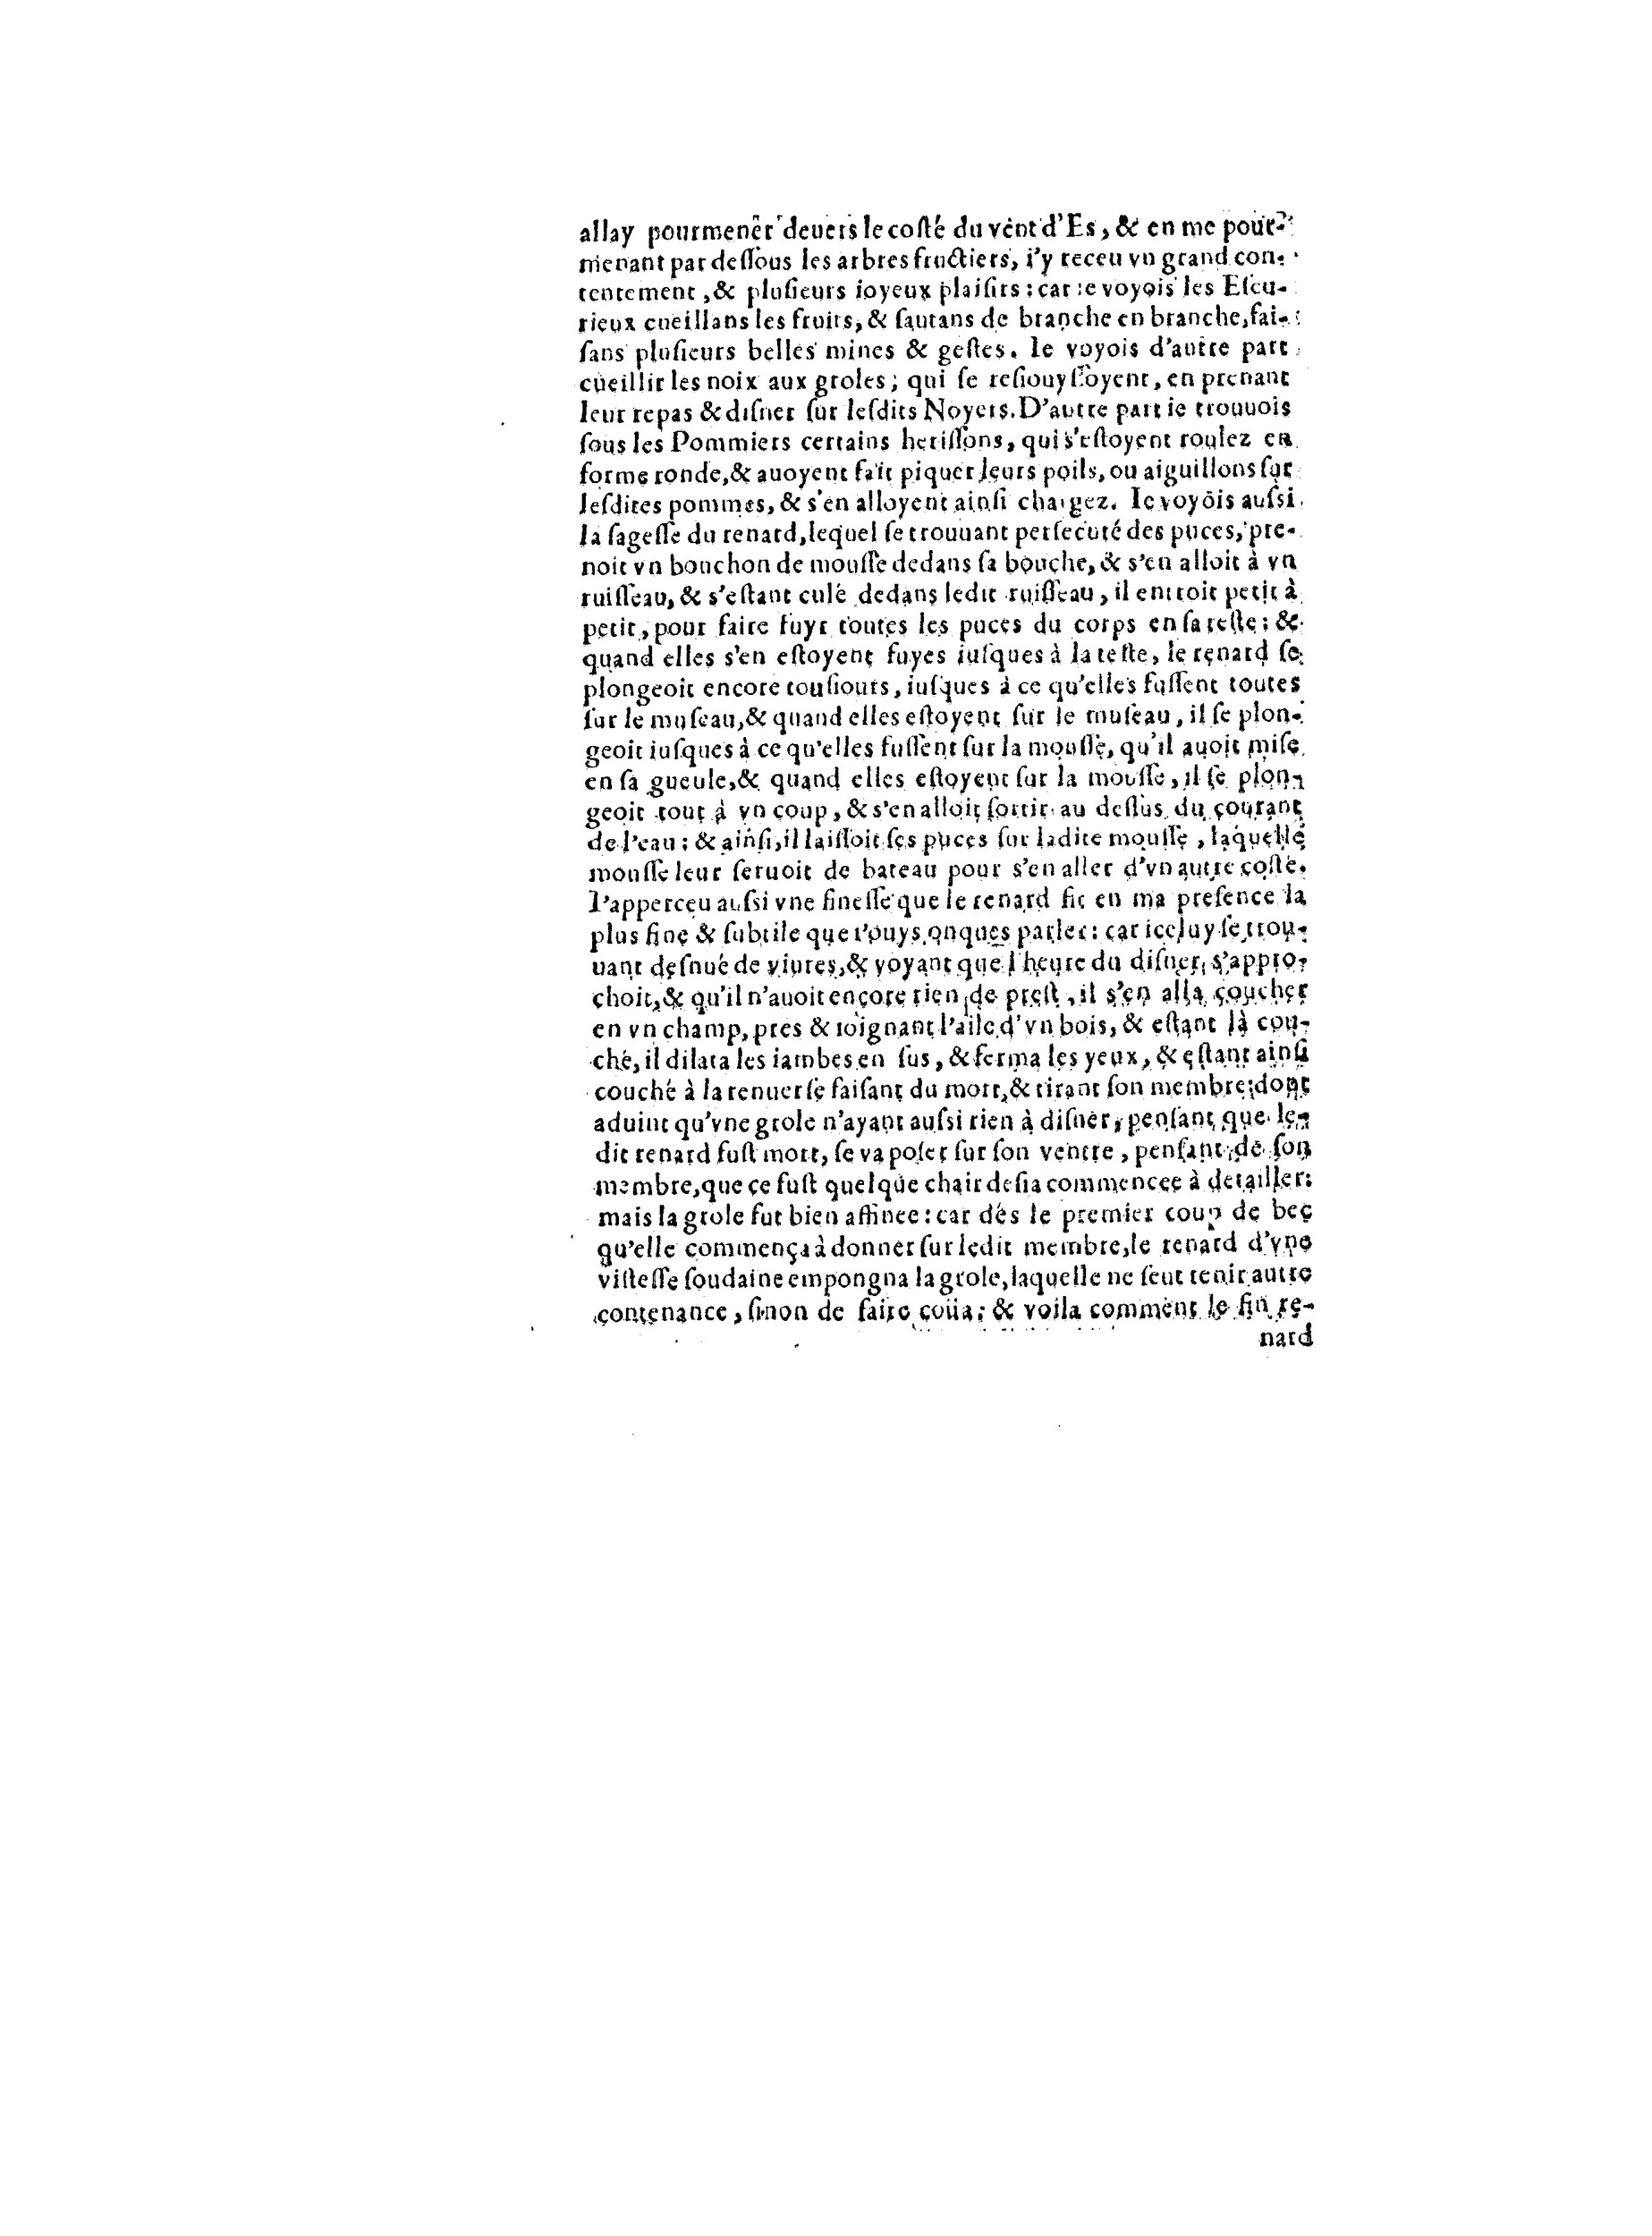 1563 Recepte veritable Berton_BNF_Page_093.jpg